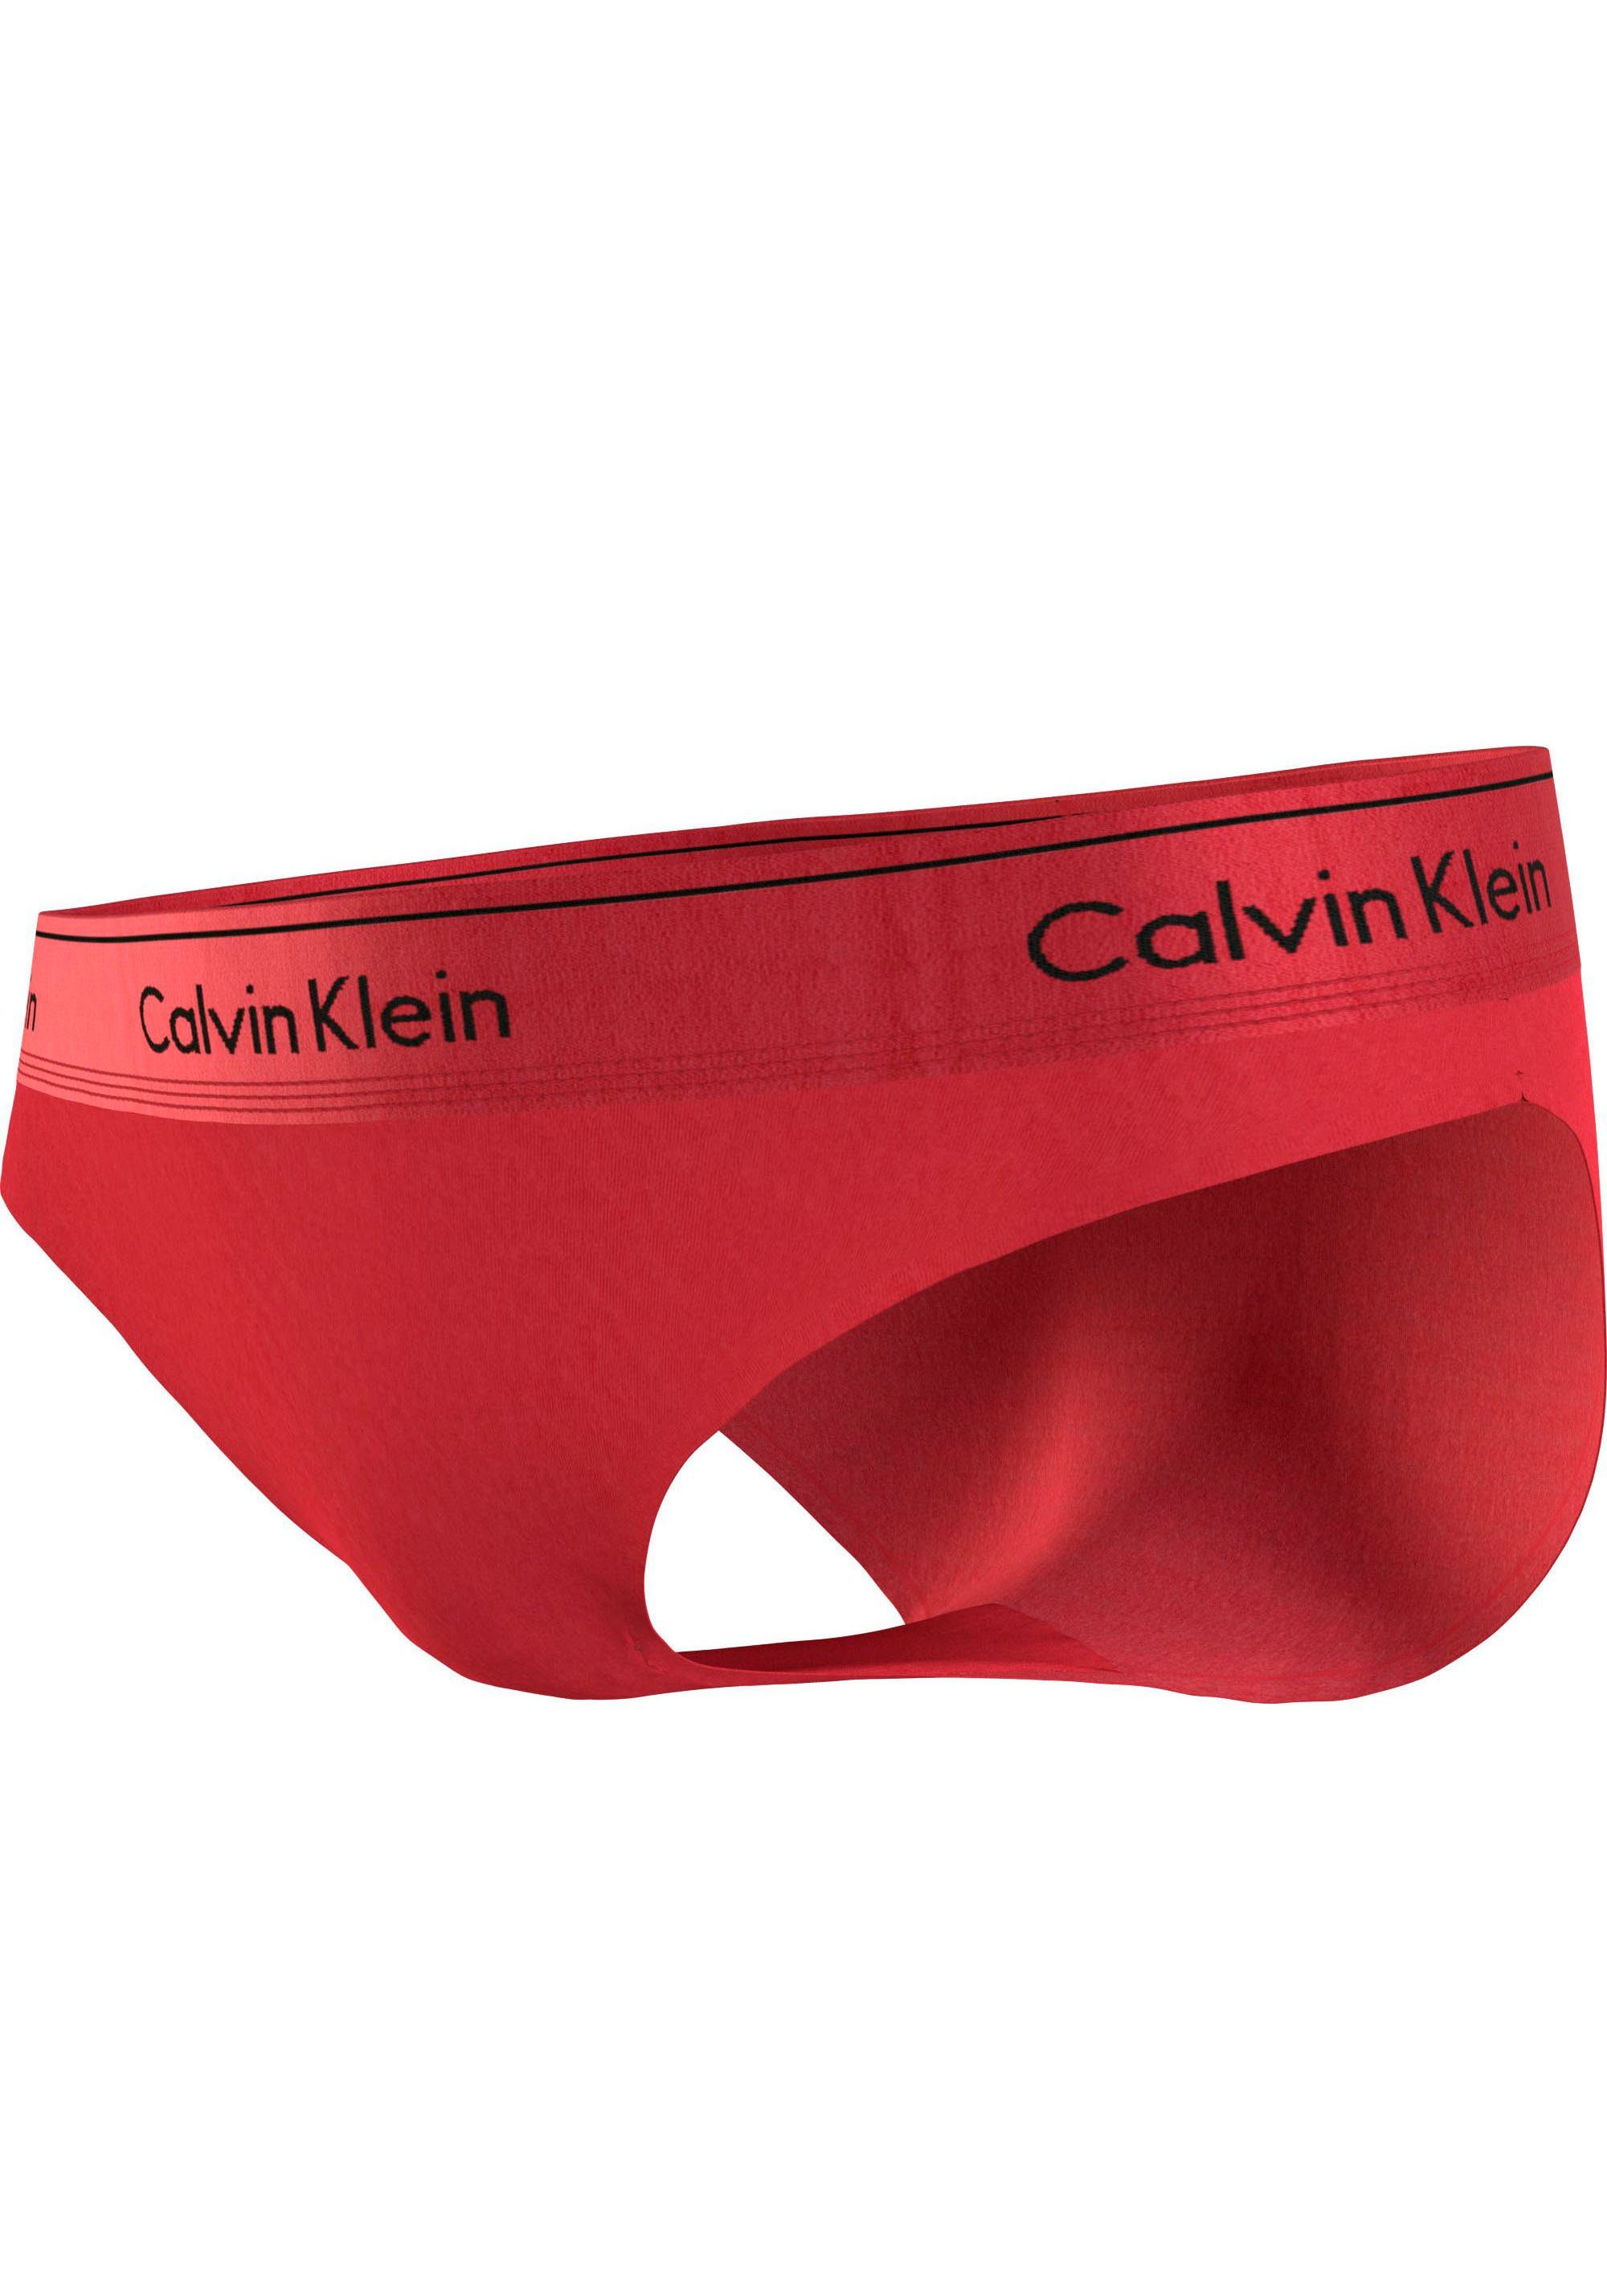 BIKINI Calvin mit CK-Logoschriftzug Klein Bikinislip Underwear